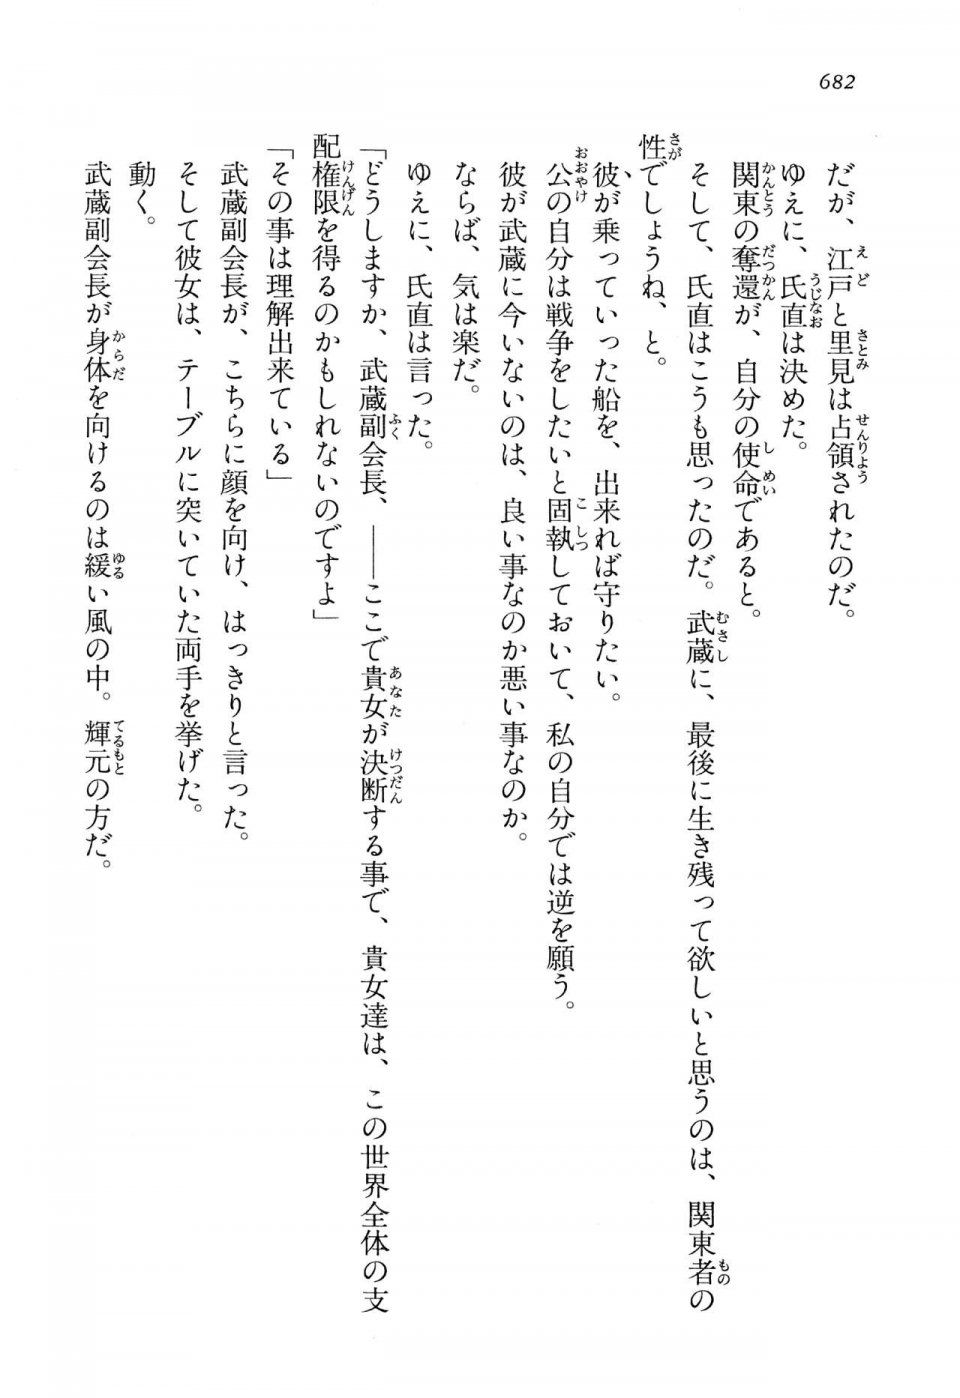 Kyoukai Senjou no Horizon LN Vol 13(6A) - Photo #682